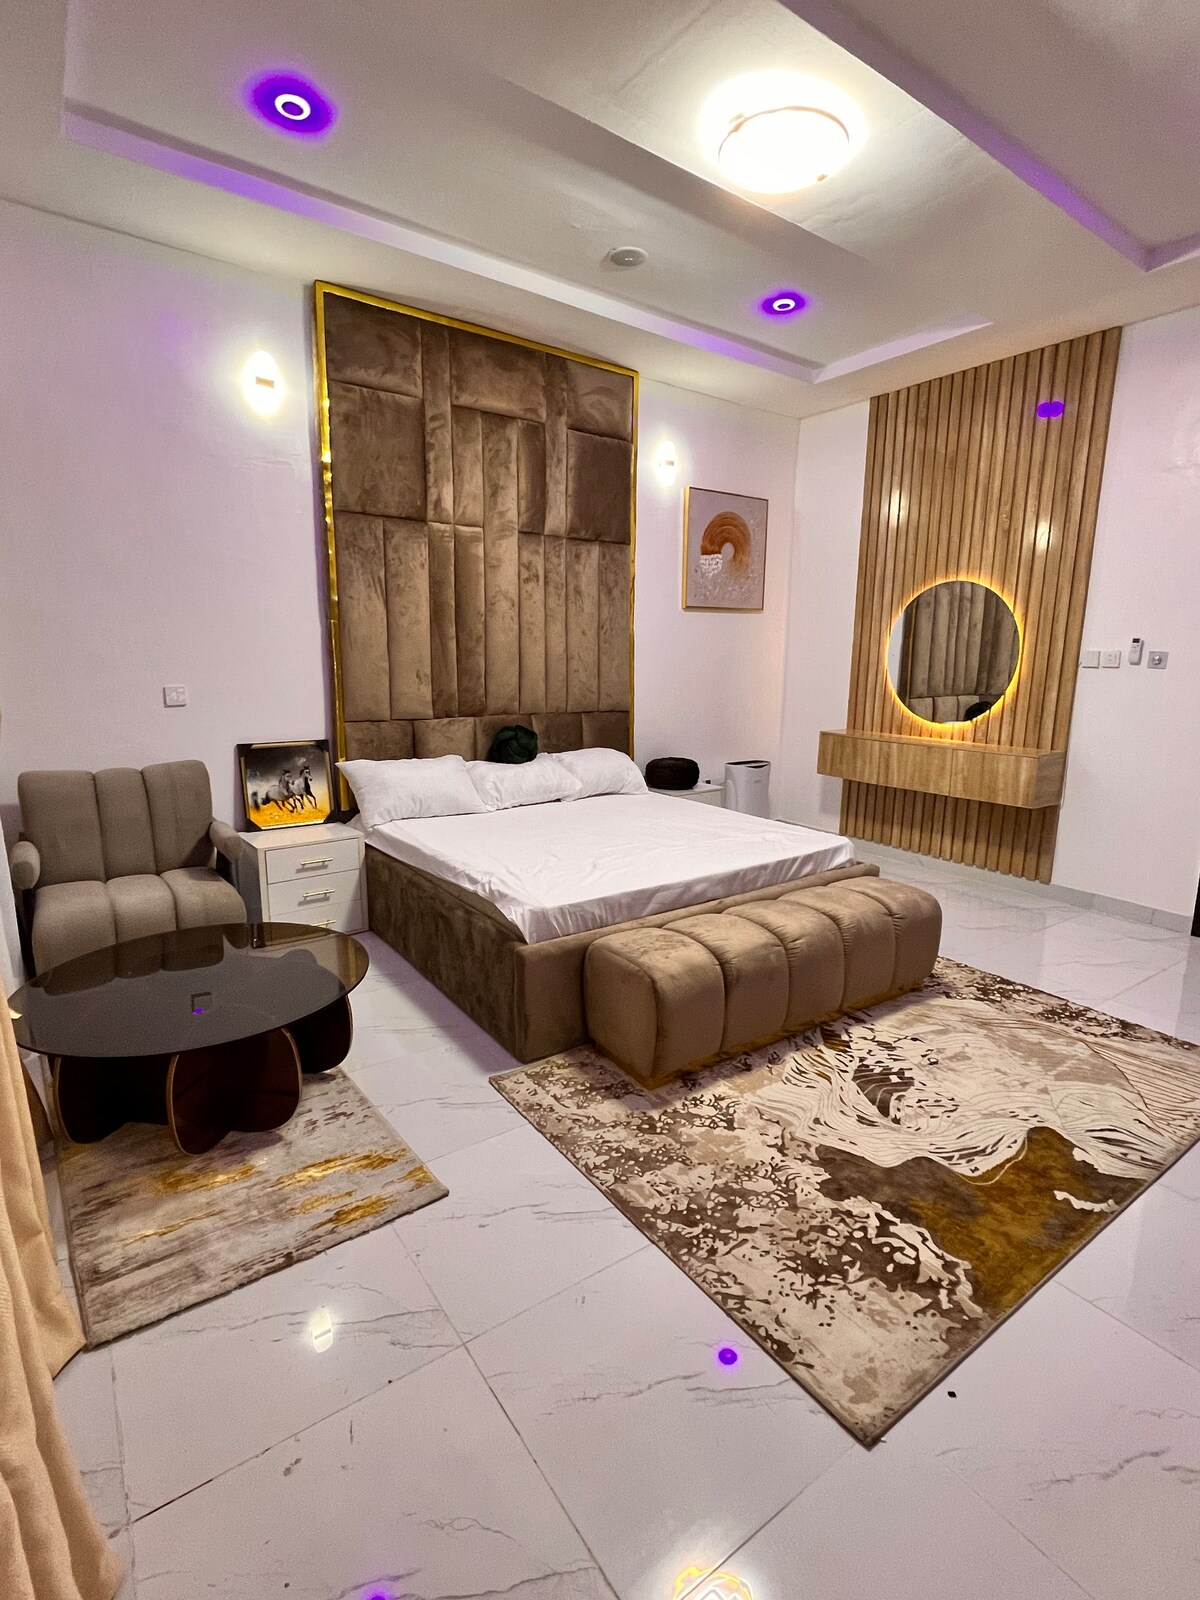 4 bedroom luxury/ comfy duplex en-suite